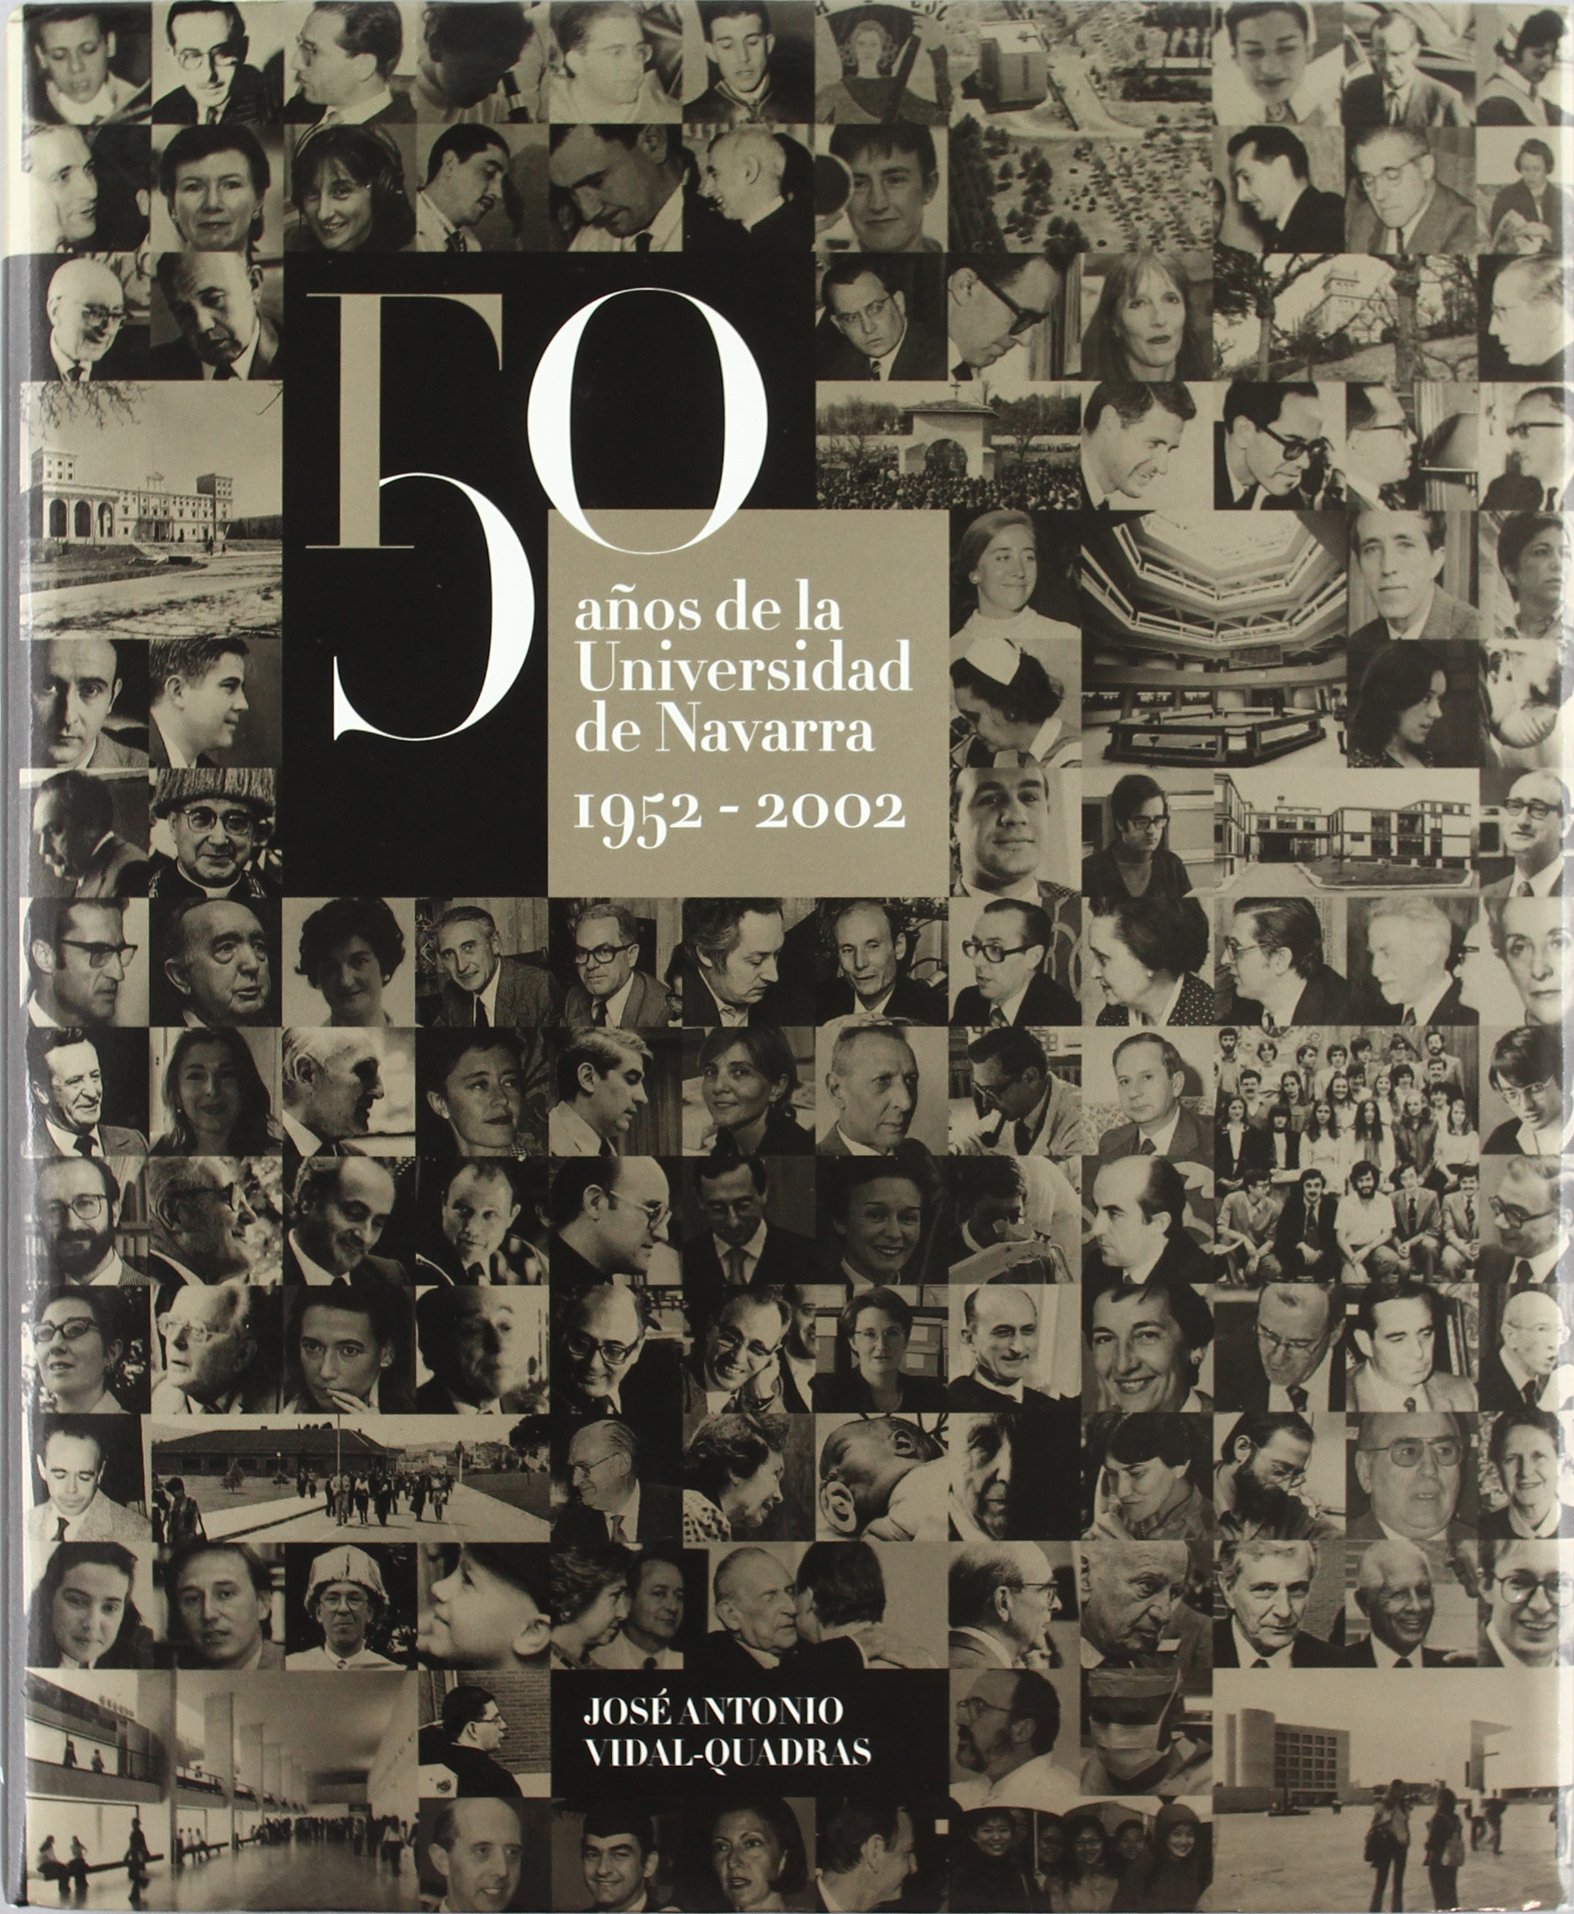 50 años de la universidad de Navarra